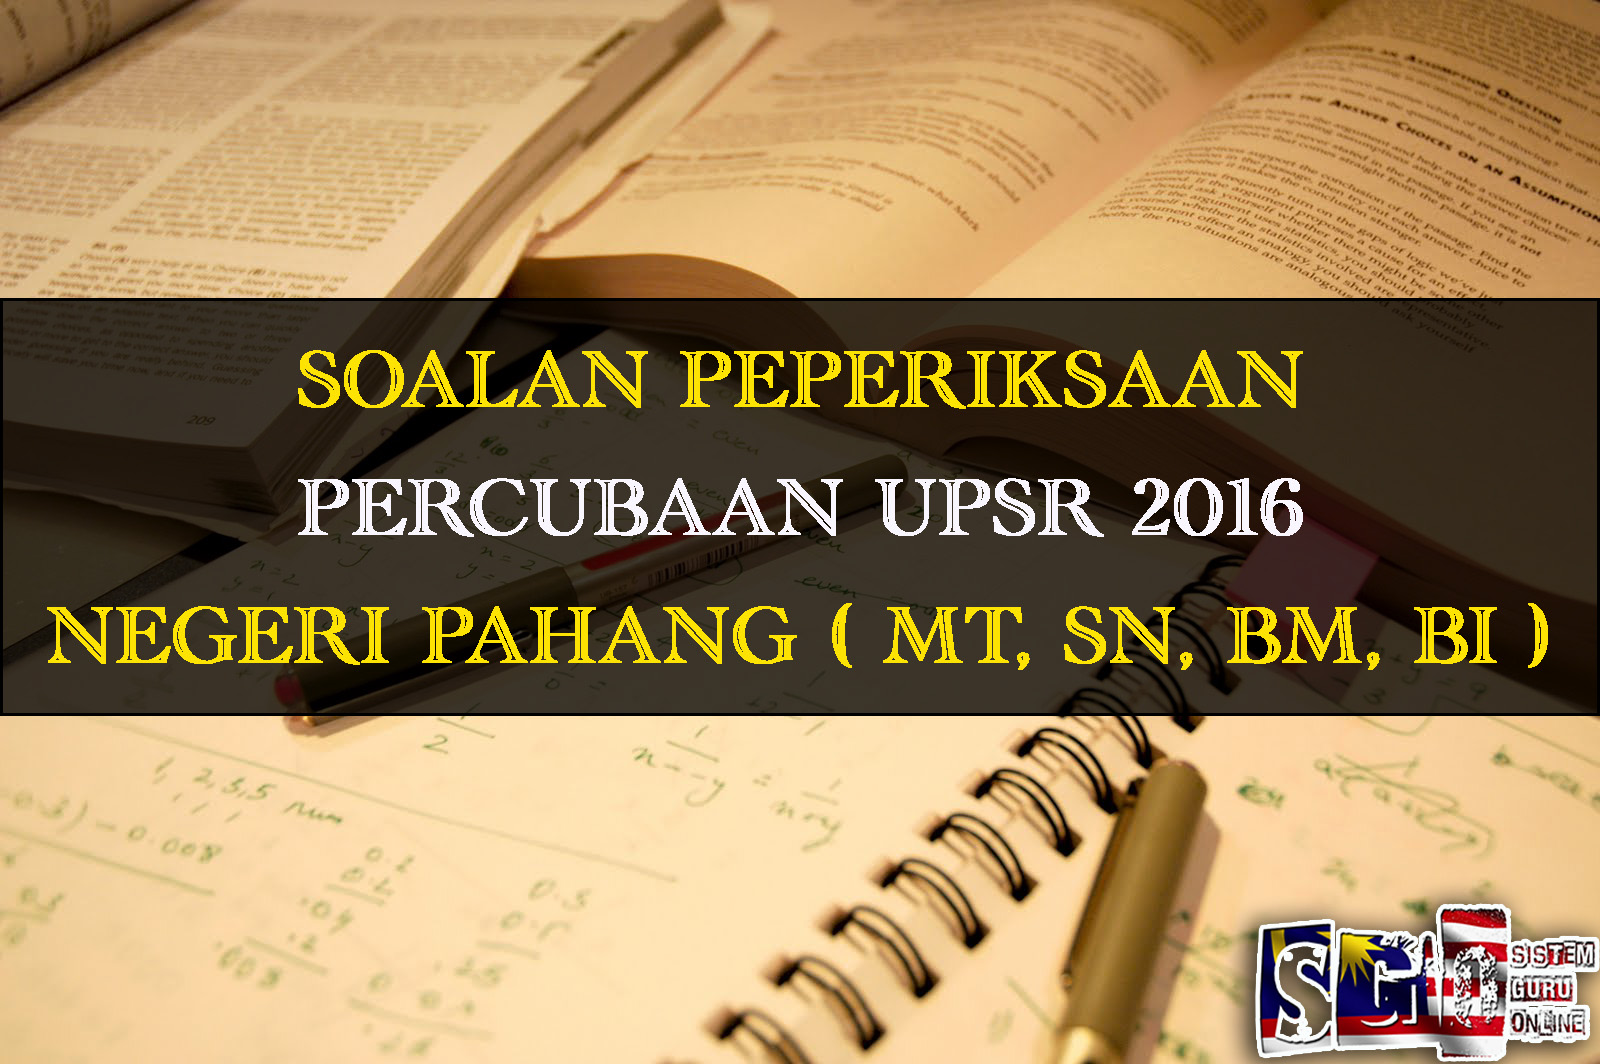 Soalan Percubaan UPSR 2016 Negeri Pahang Subjek Matematik 